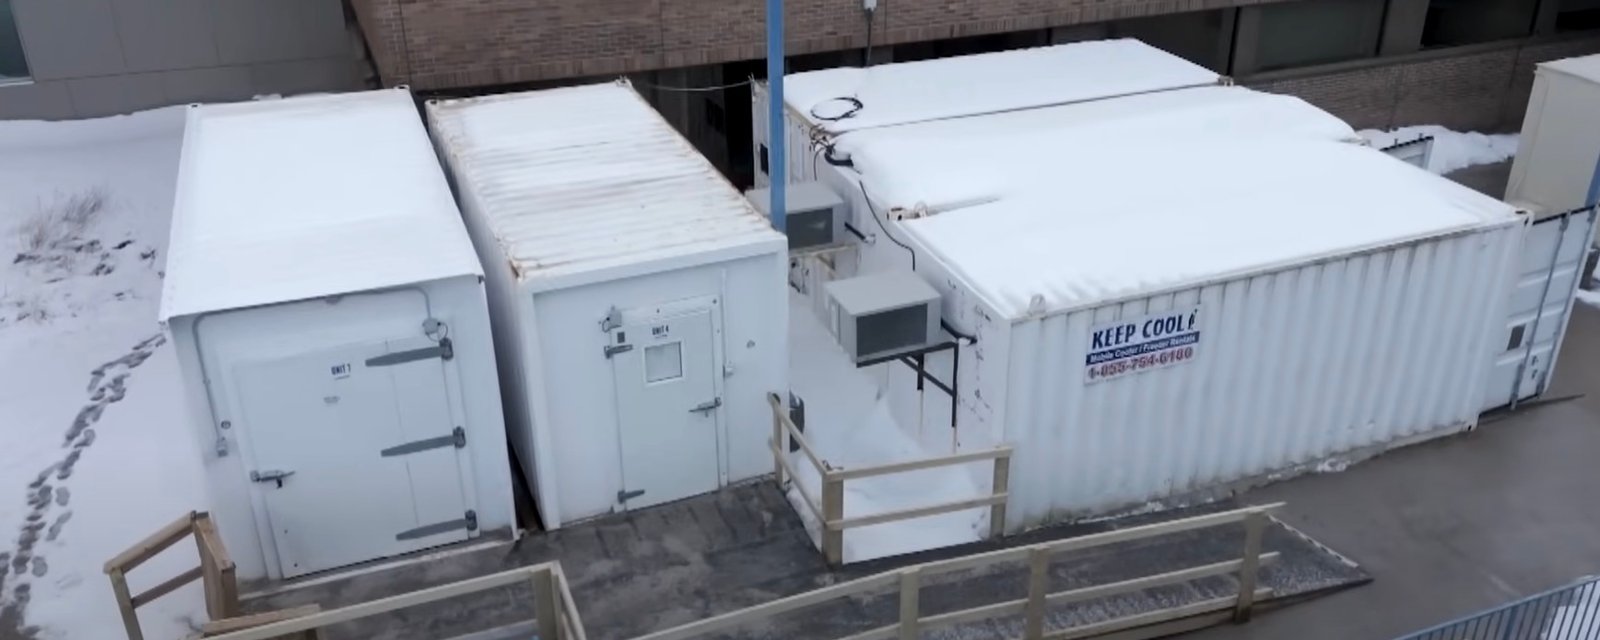 Plusieurs cadavres non réclamés se trouvent dans des conteneurs réfrigérés d'un hôpital